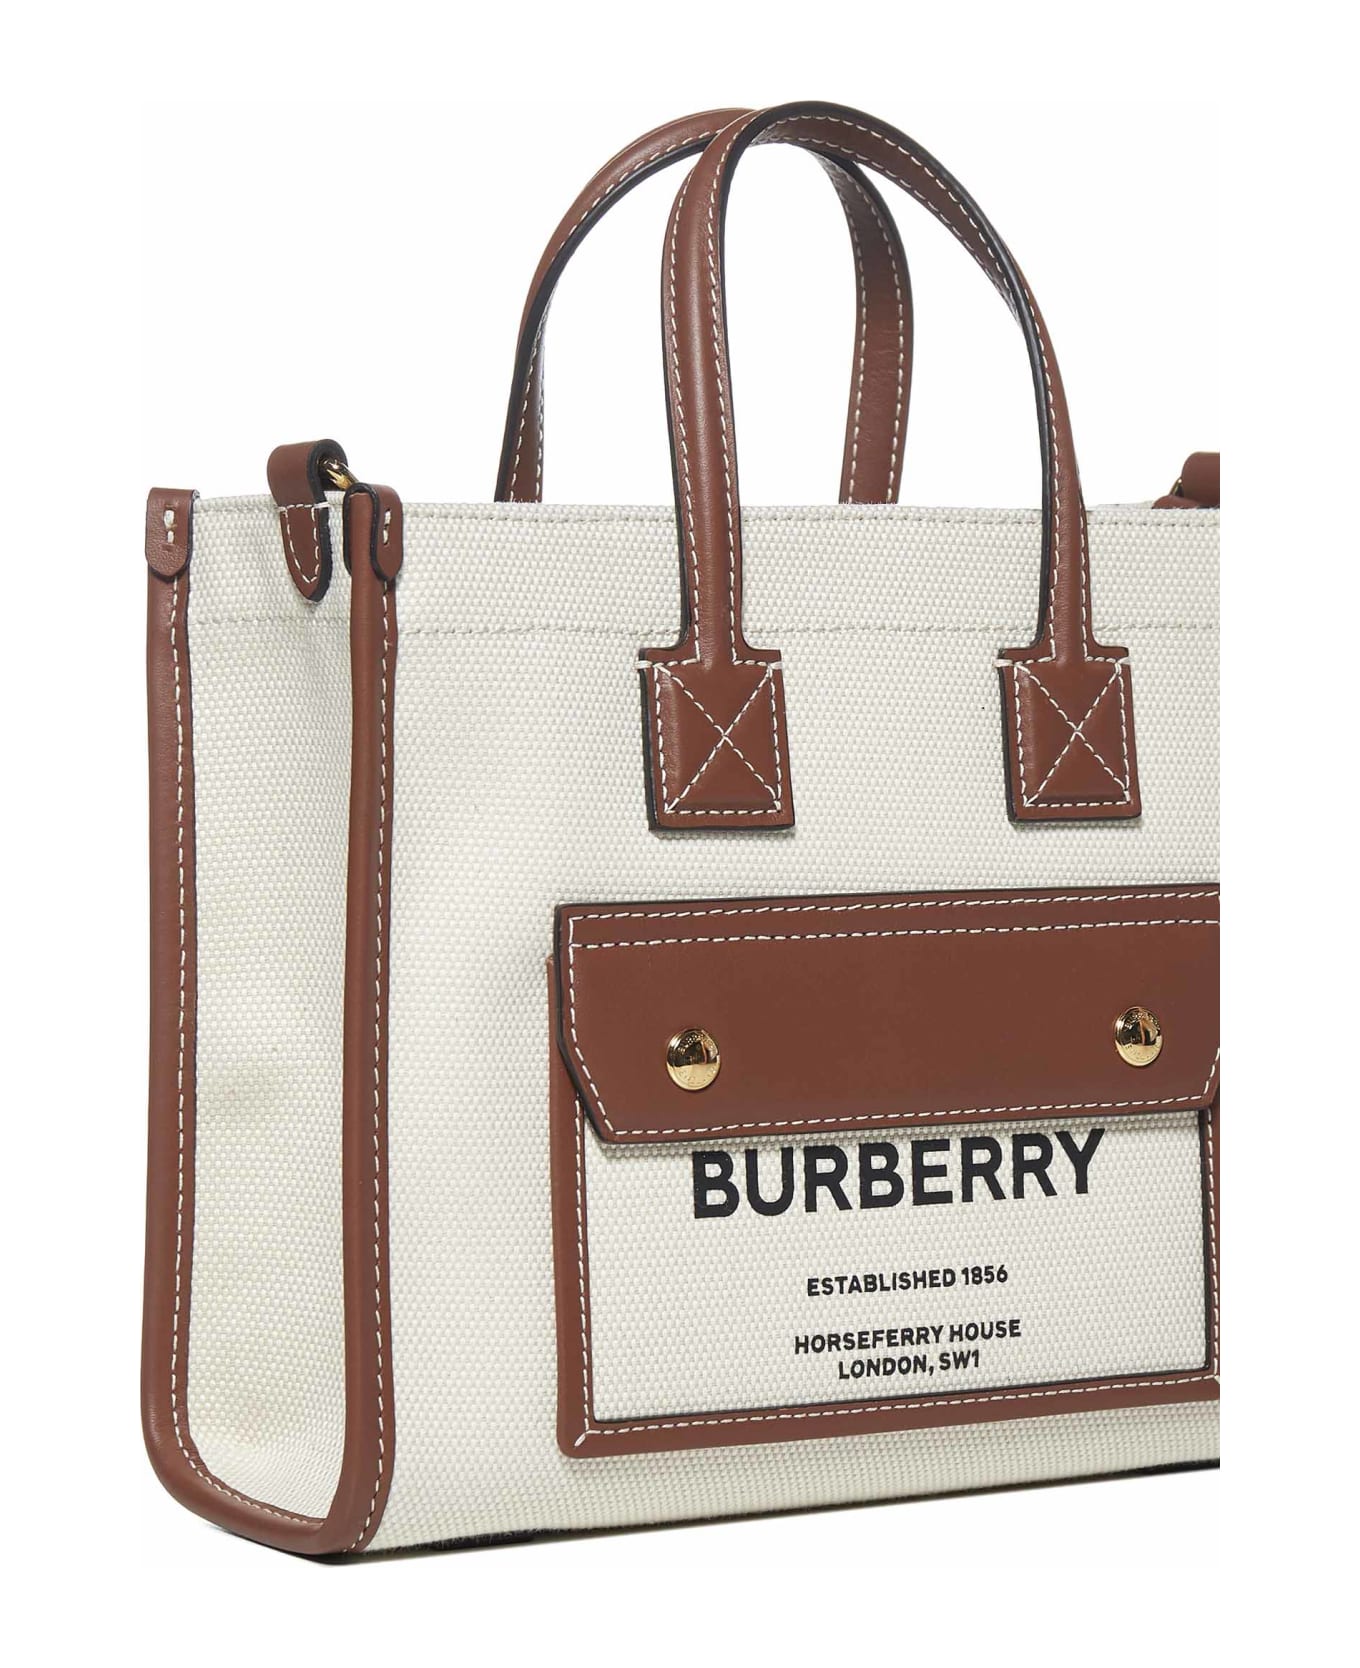 Burberry New Tote Bag - Natural/tan